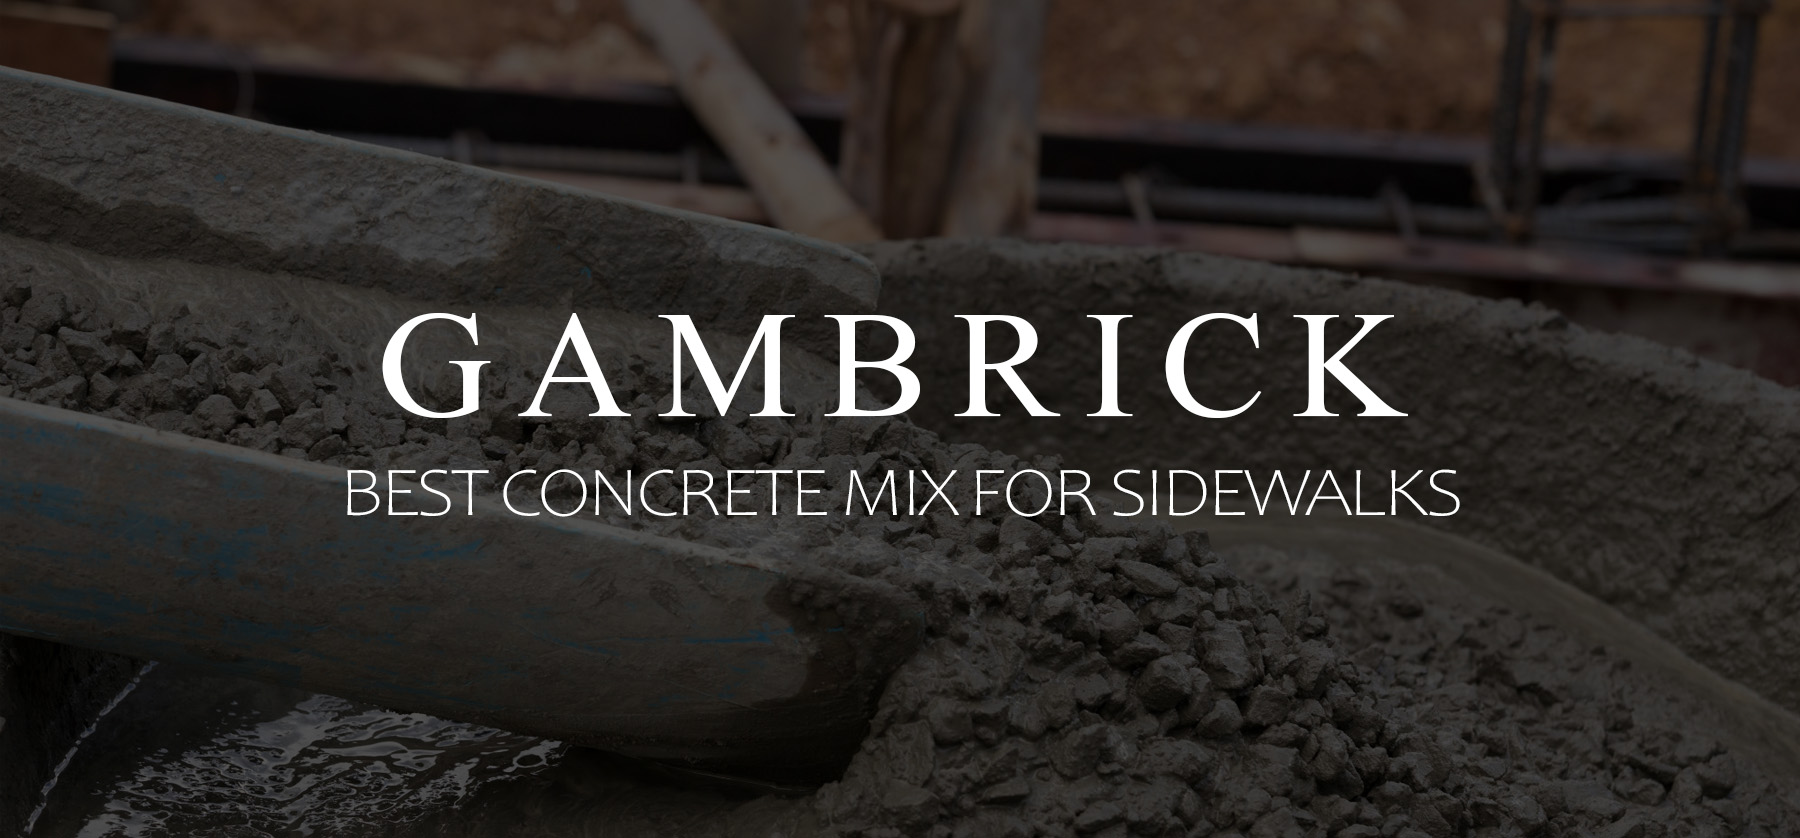 best concrete mix for sidewalks banner 1